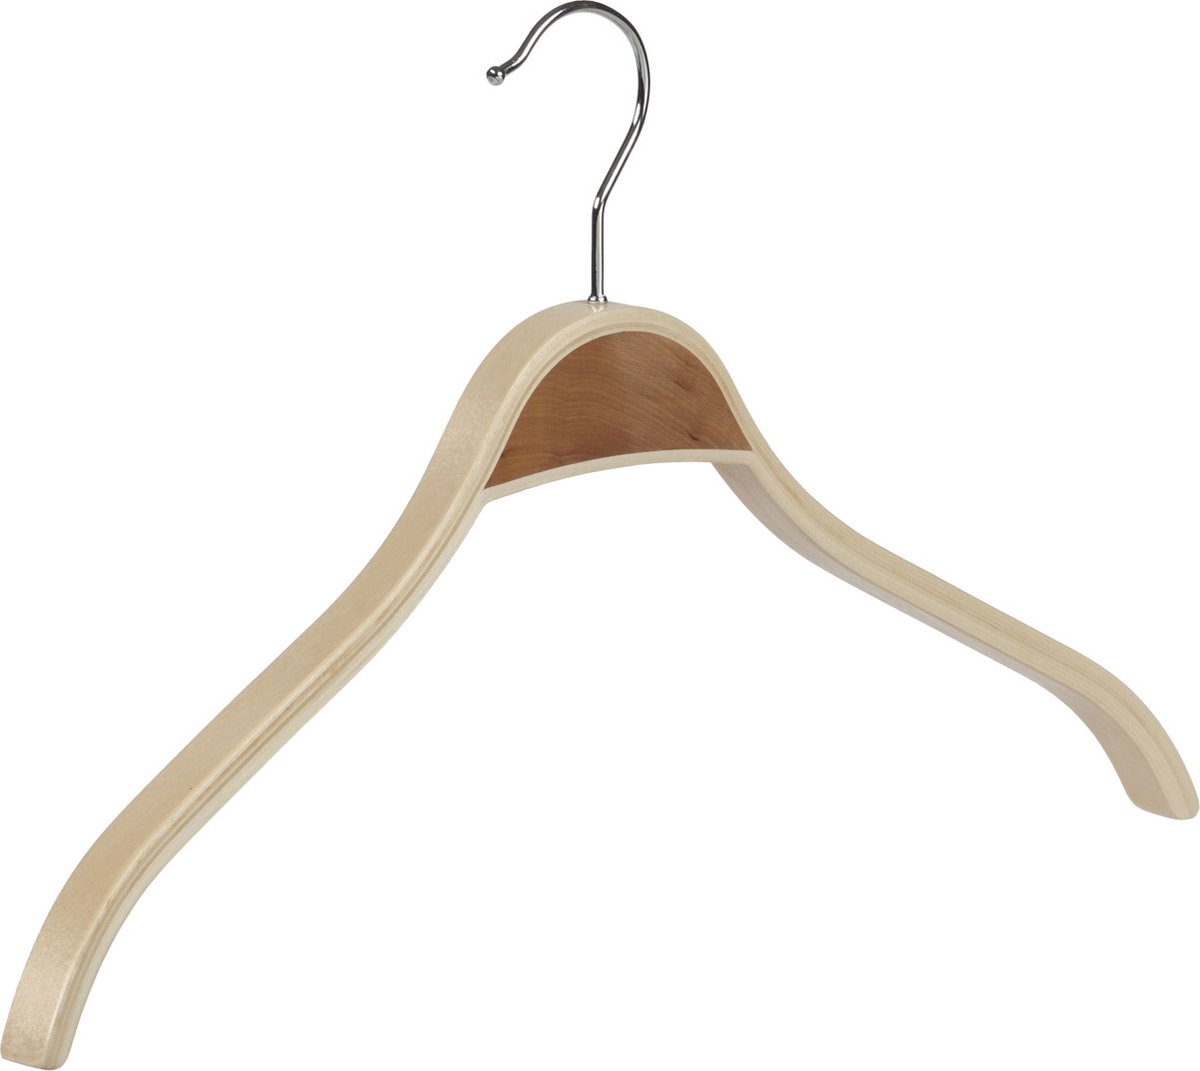 De Kledinghanger Gigant - 6 x Mantelhanger / kostuumhanger berkenhout naturel gelakt met schouderverbreding, 46 cm